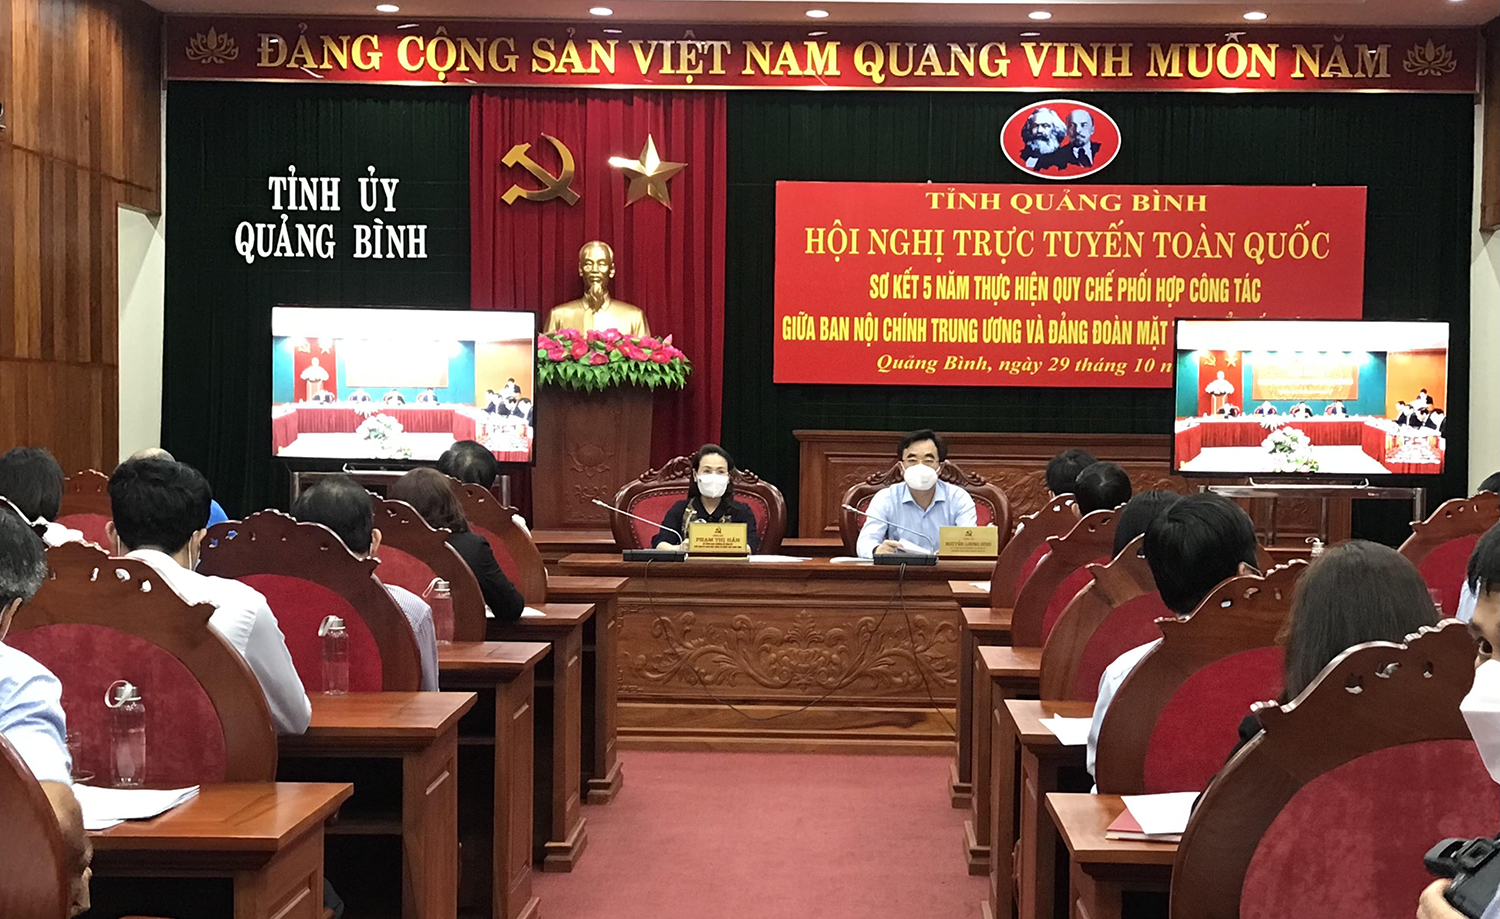 Sơ kết 5 năm thực hiện quy chế phối hợp giữa Ban Nội chính Trung ương và Đảng đoàn Mặt trận Tổ quốc Việt Nam